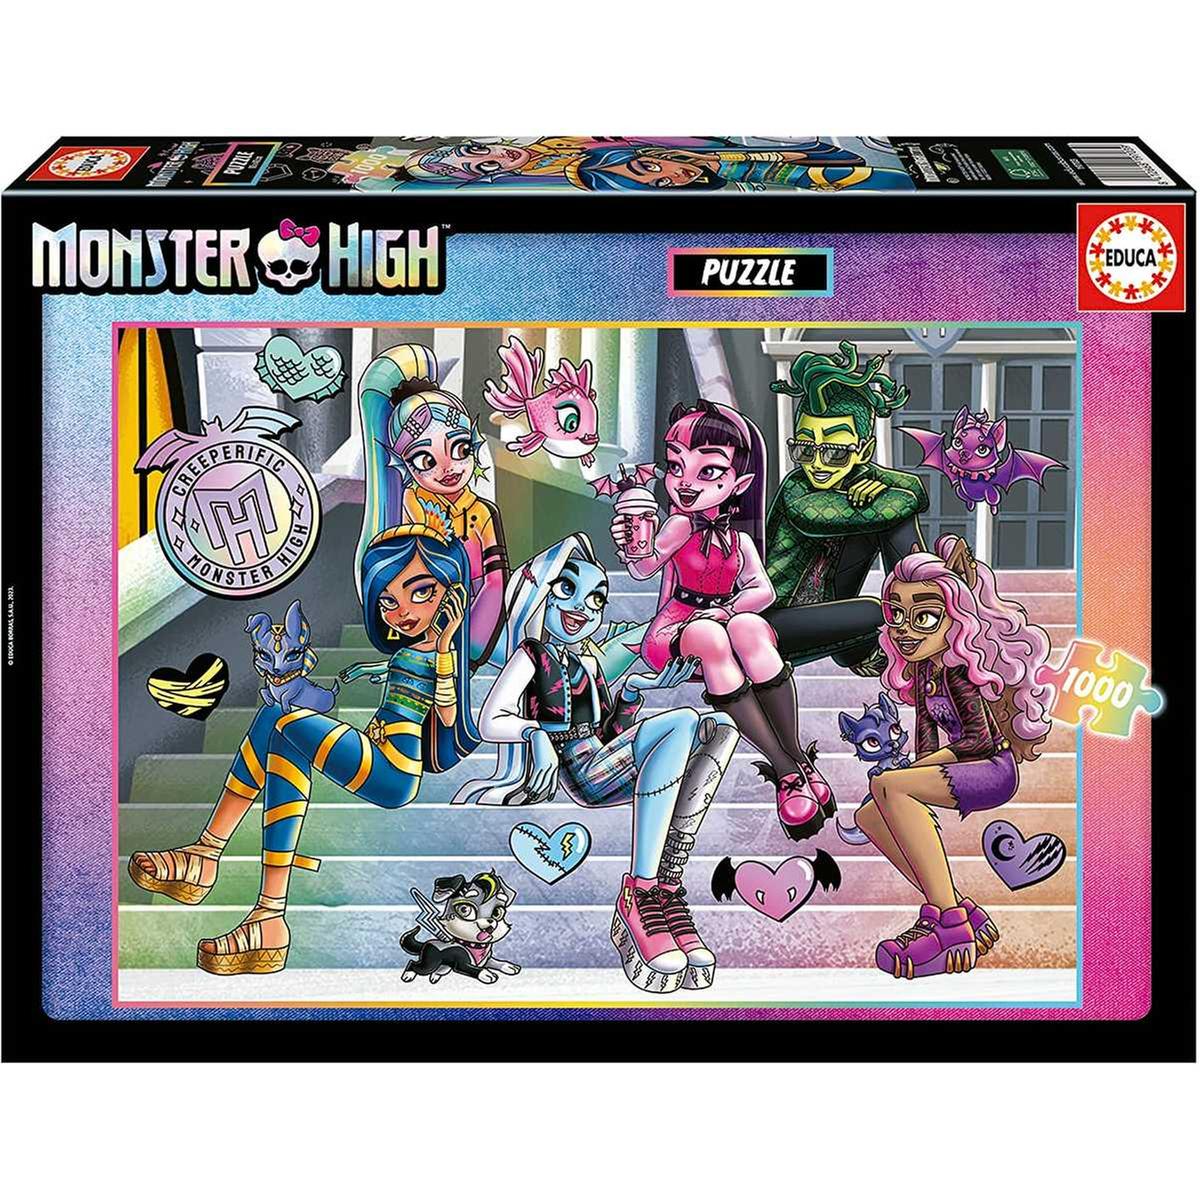 Monster High - Puzzle de 1000 peças Monster High para adultos, 68 x 48 cm e  cola Fix incluída ㅤ | PUZZLE 1000+ pçs | Loja de brinquedos e videojogos  Online Toysrus